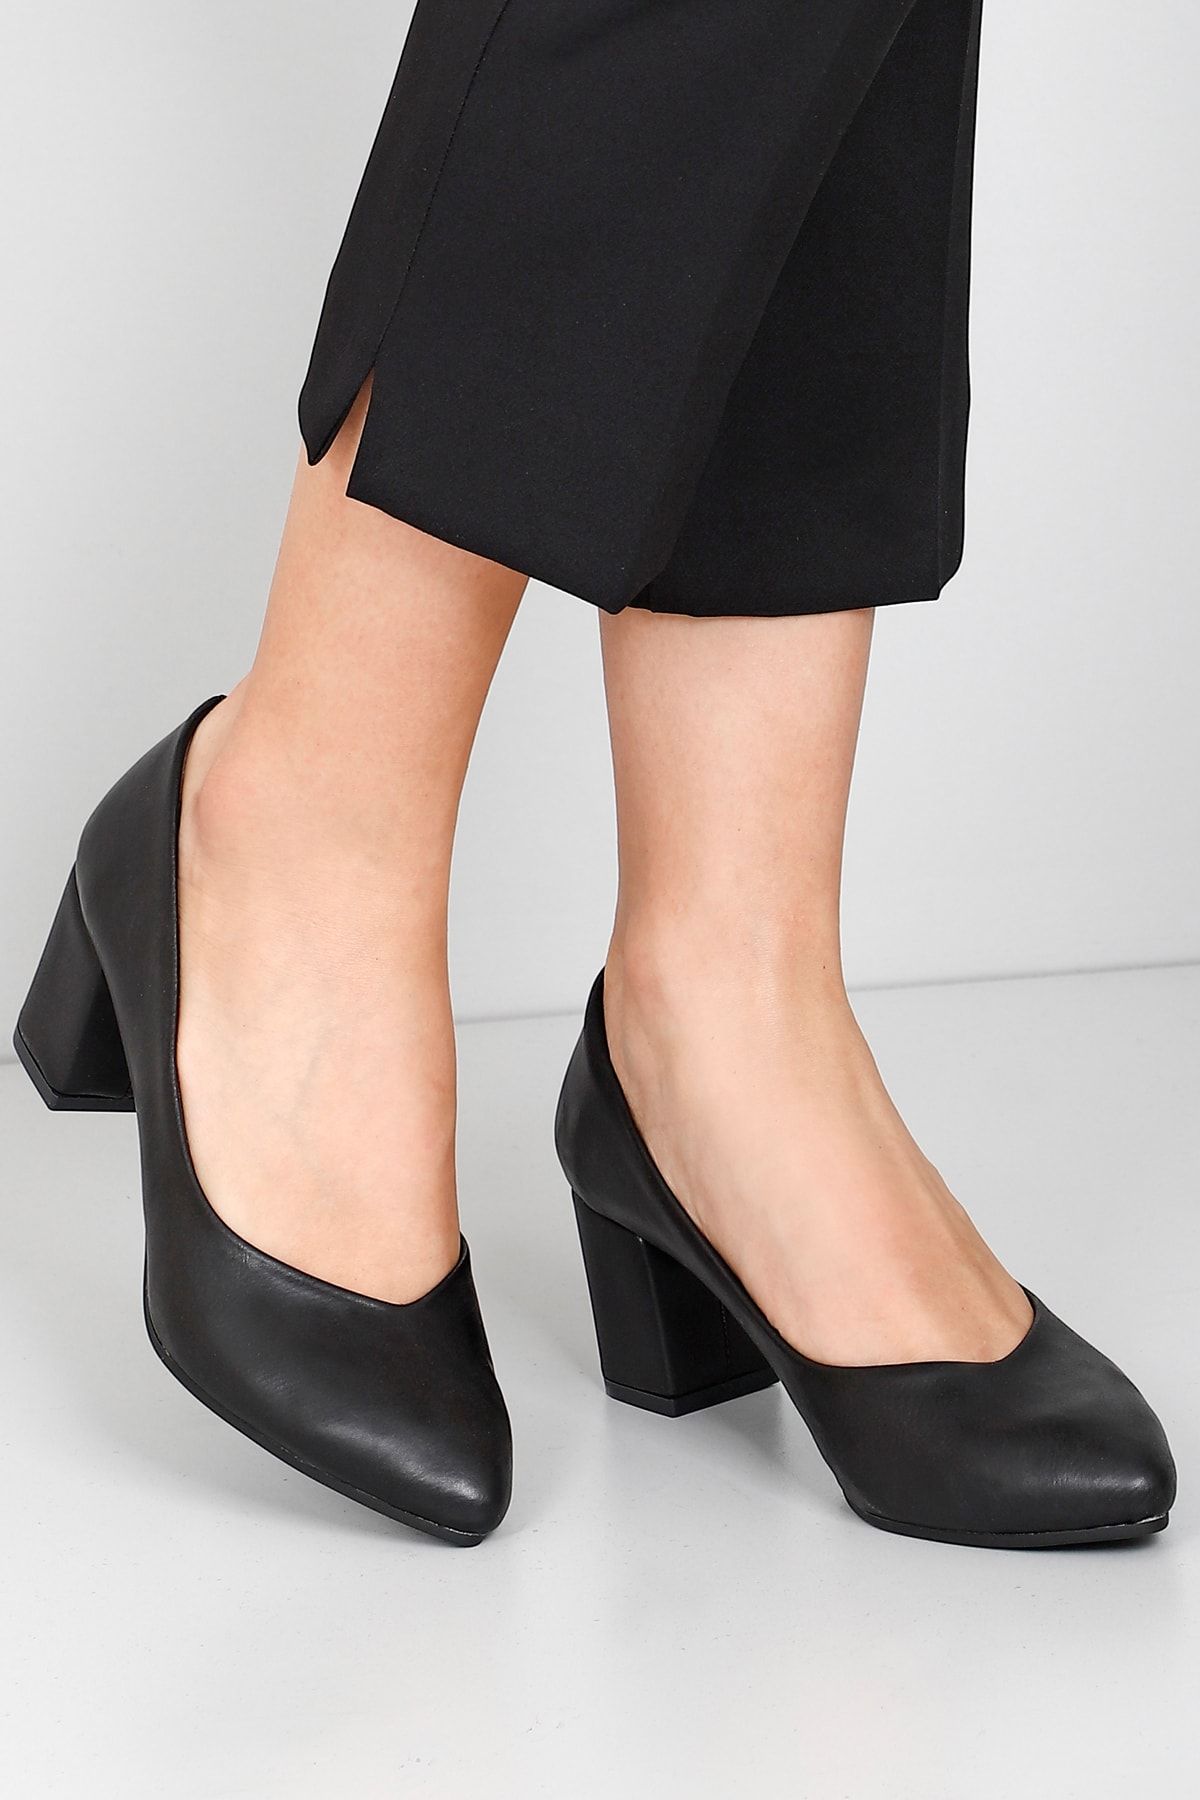 GÖNDERİ(R) Kadın Ayakkabı 37709 Siyah